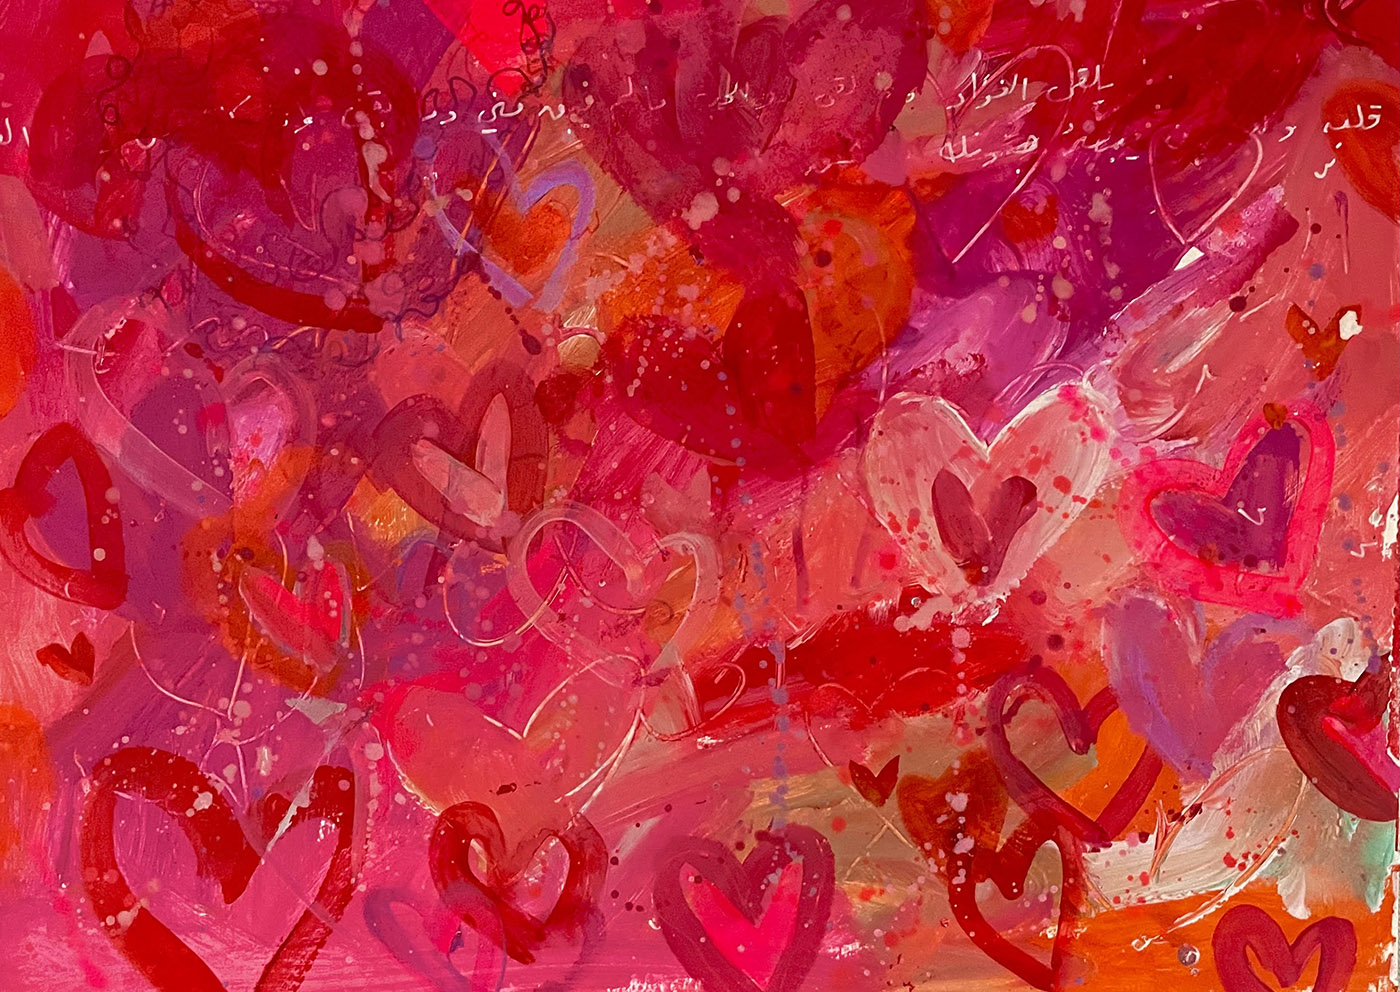 4. Cartas de amor: Corazones de grafiti, 28x40cm, acrílico sobre papel, 2022